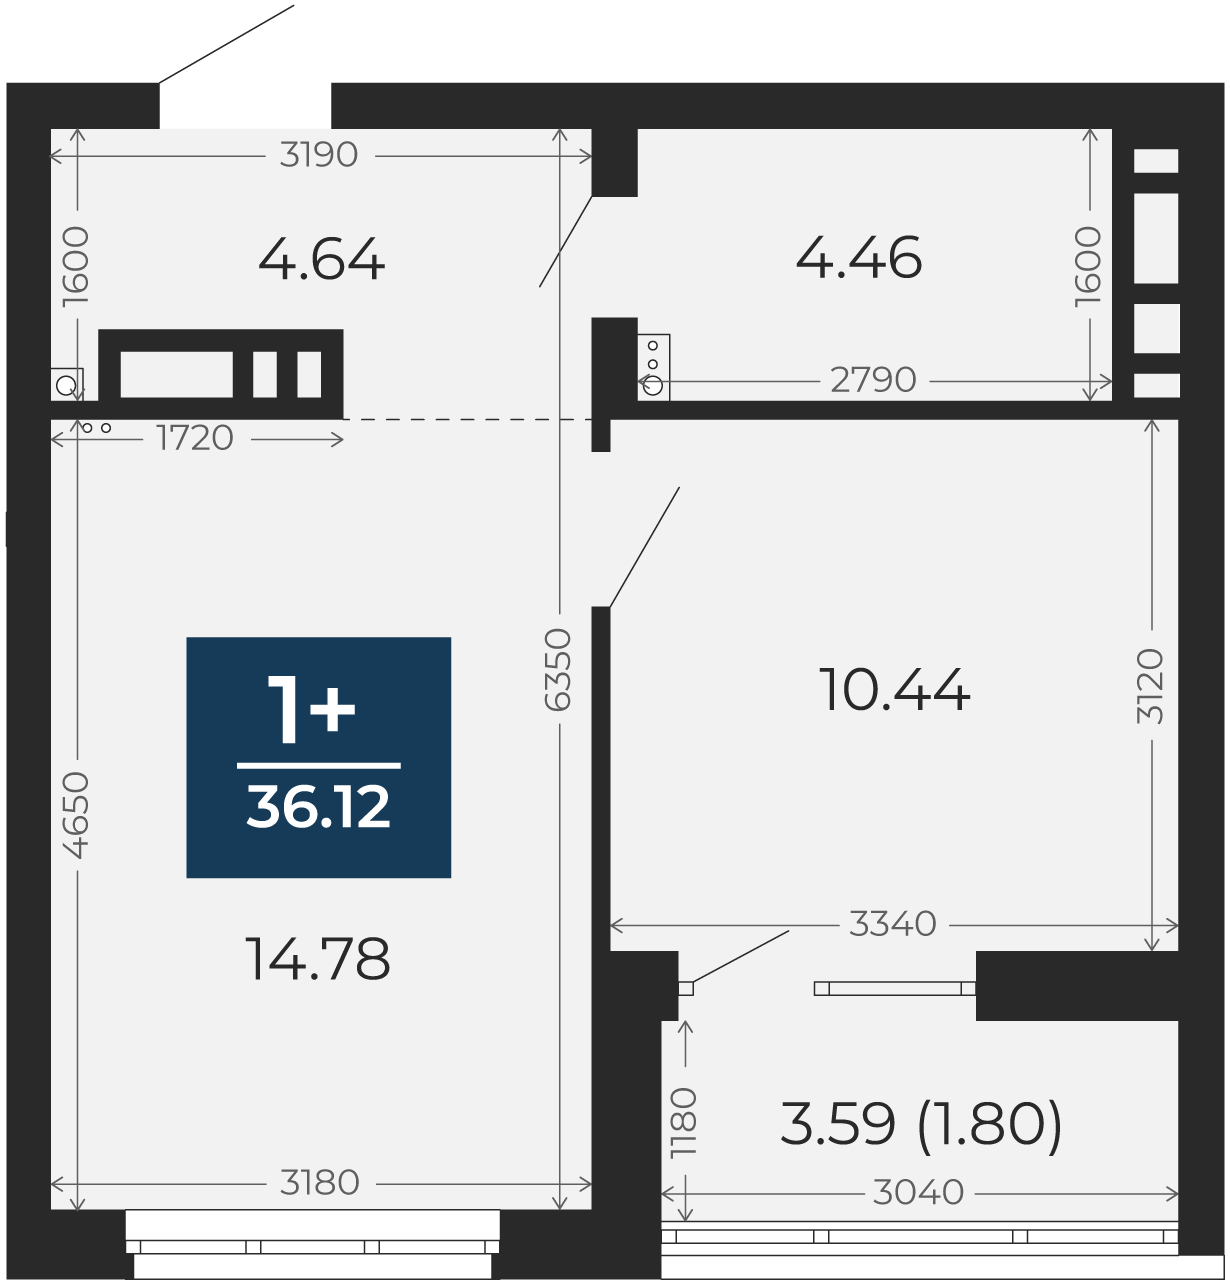 Квартира № 239, 1-комнатная, 36.12 кв. м, 12 этаж